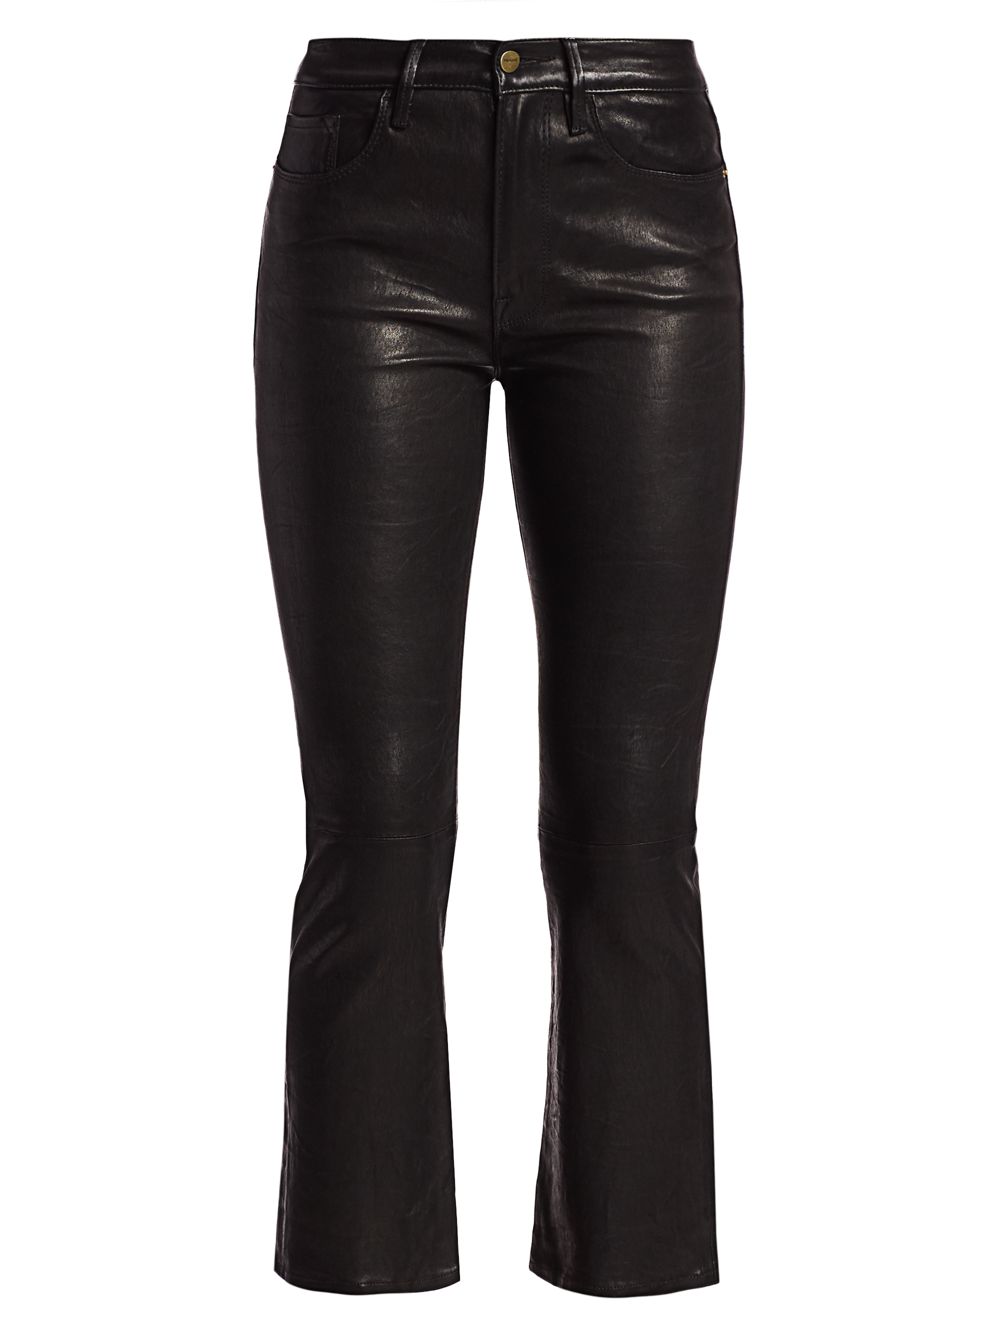 Миниатюрные кожаные брюки Le Crop с высокой посадкой Bootcut Frame, черный